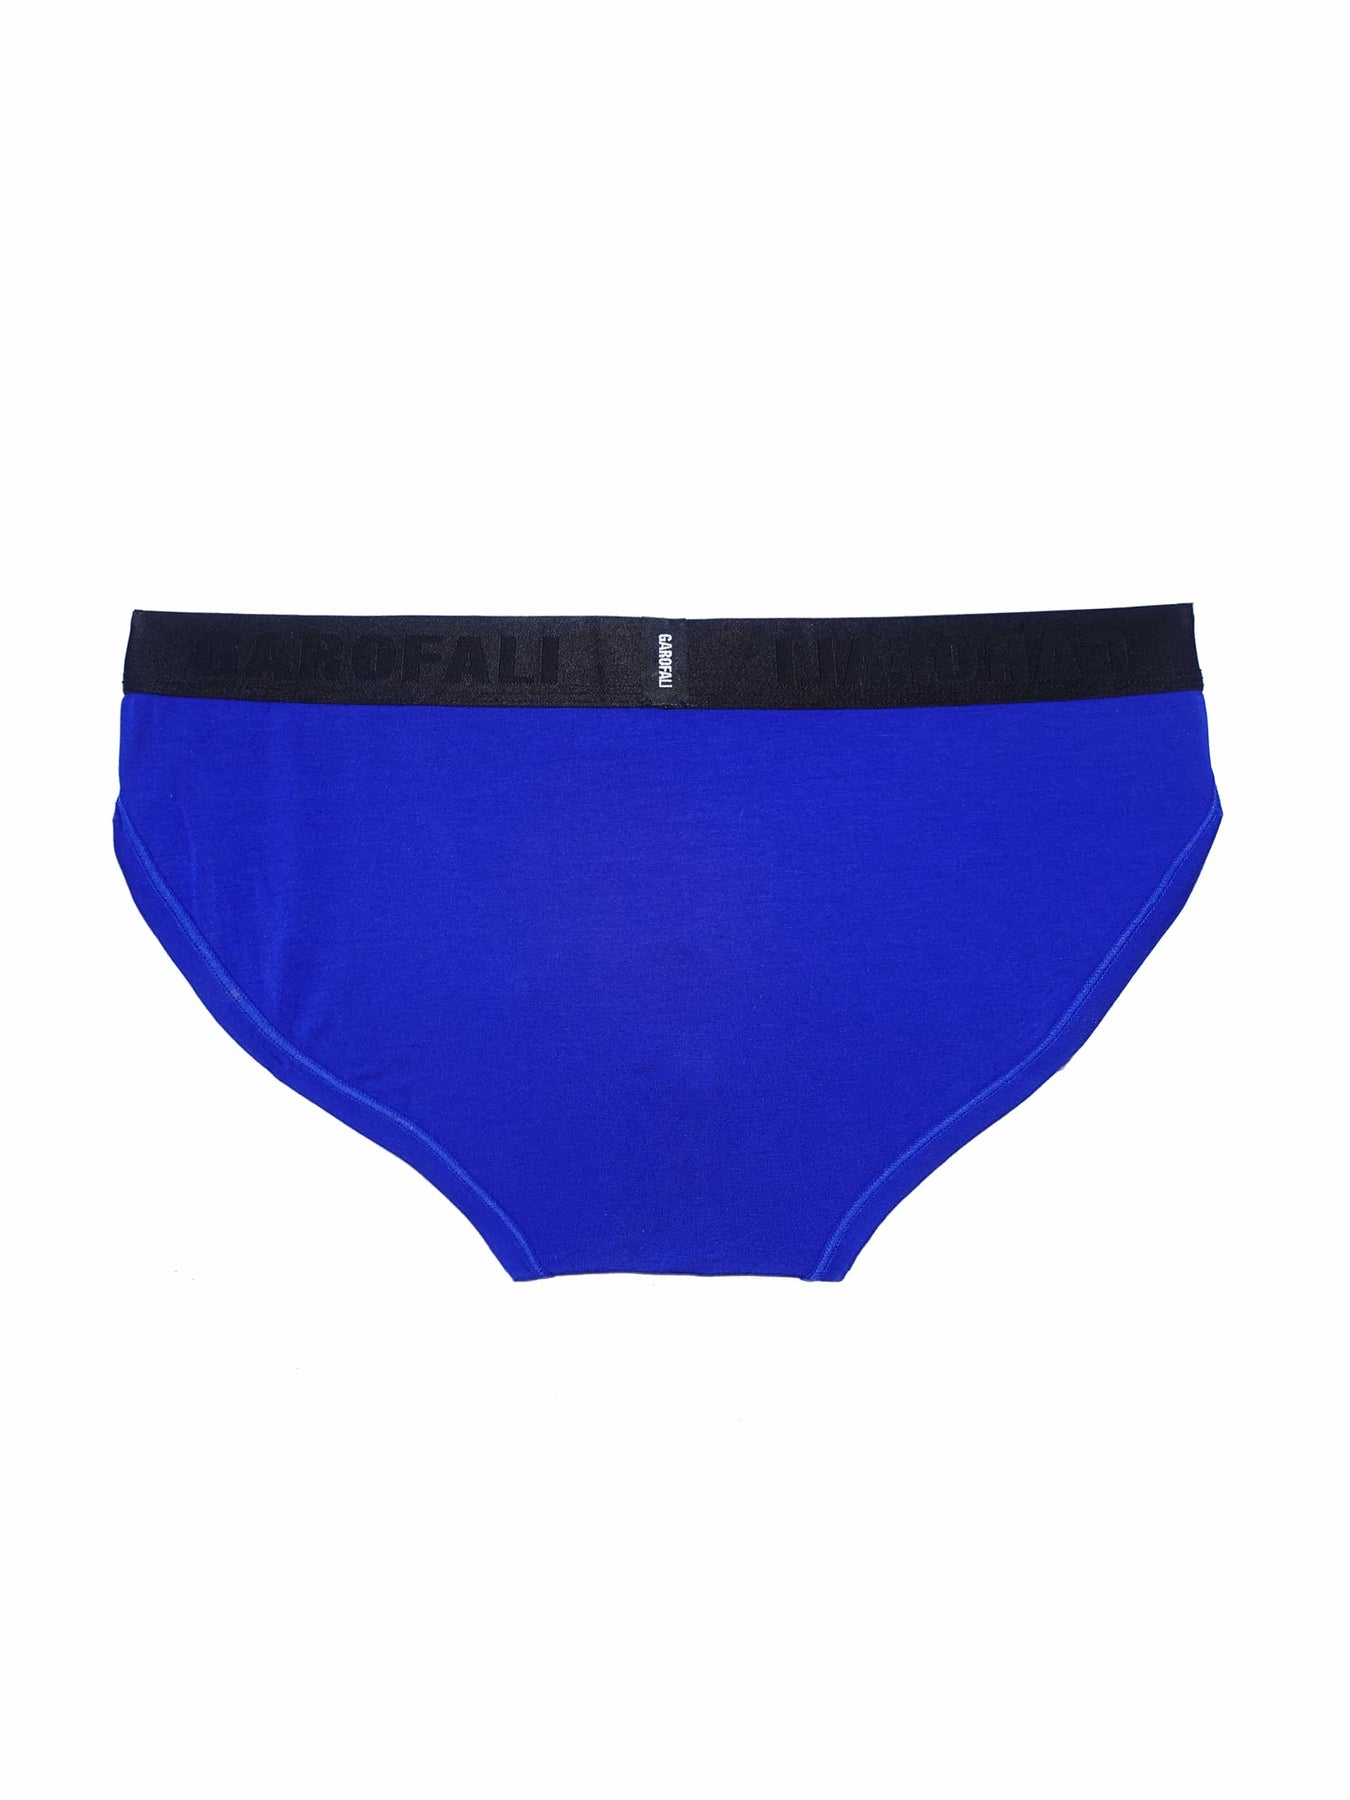 GAROFALI - Underwear, Swimwear and Clothing Capsules